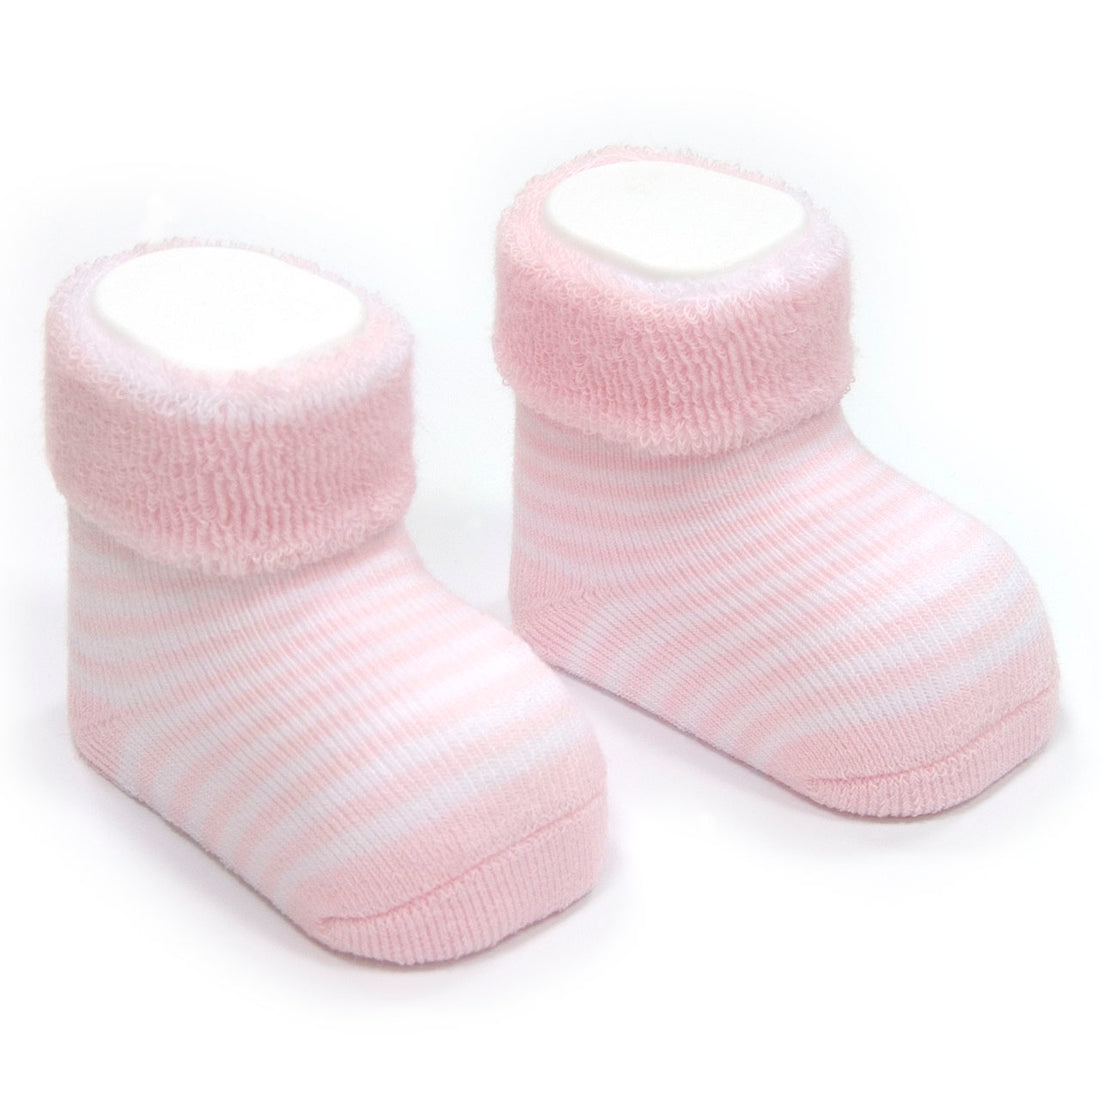 r&j-cambrass-sa-socks-for-baby-listado-562-pink- (1)